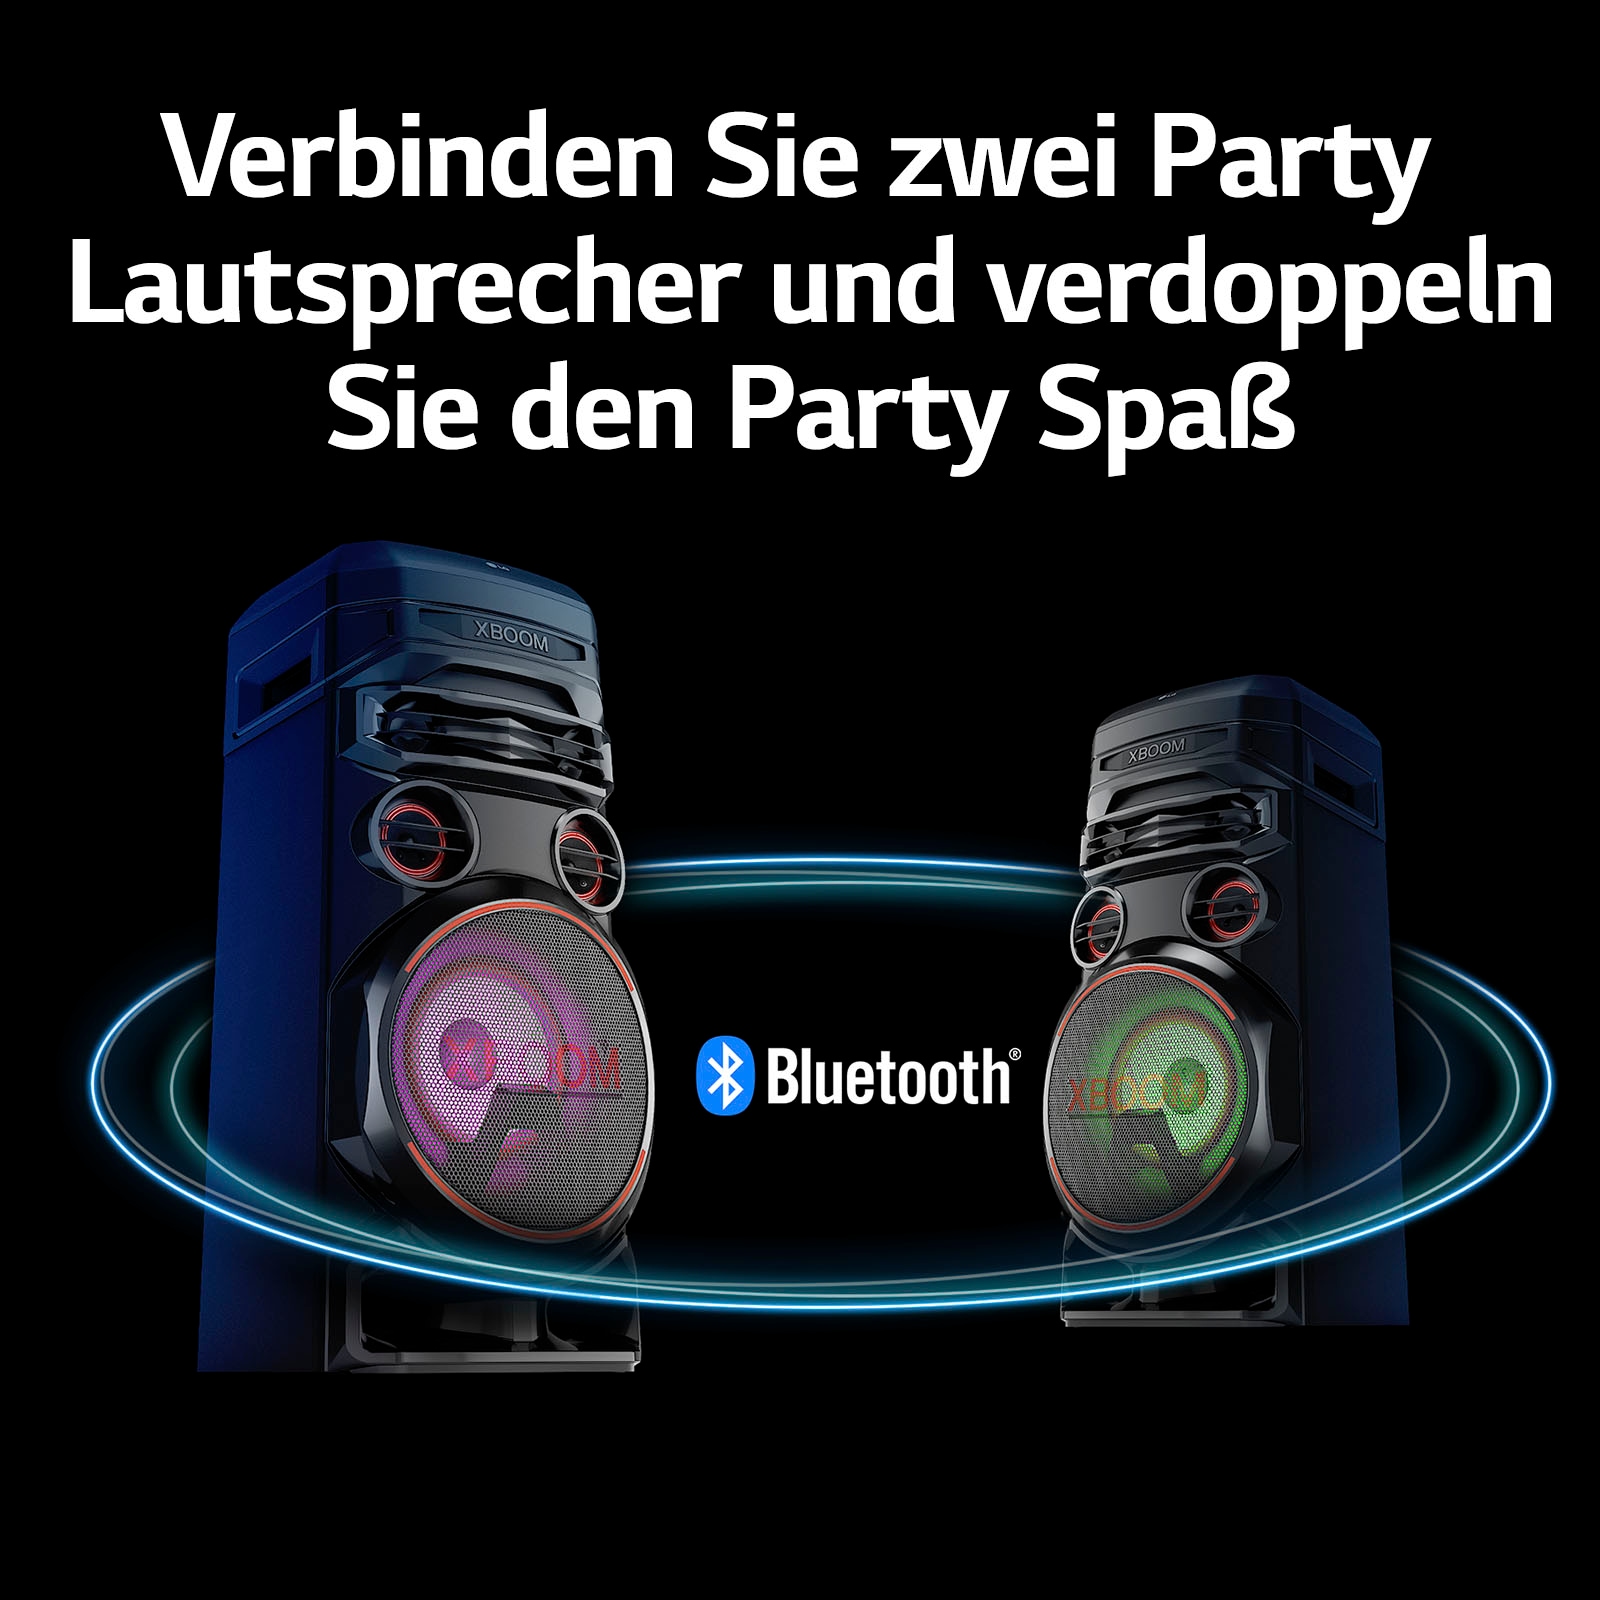 LG Party-Lautsprecher »XBOOM RNC7« auf Raten bestellen